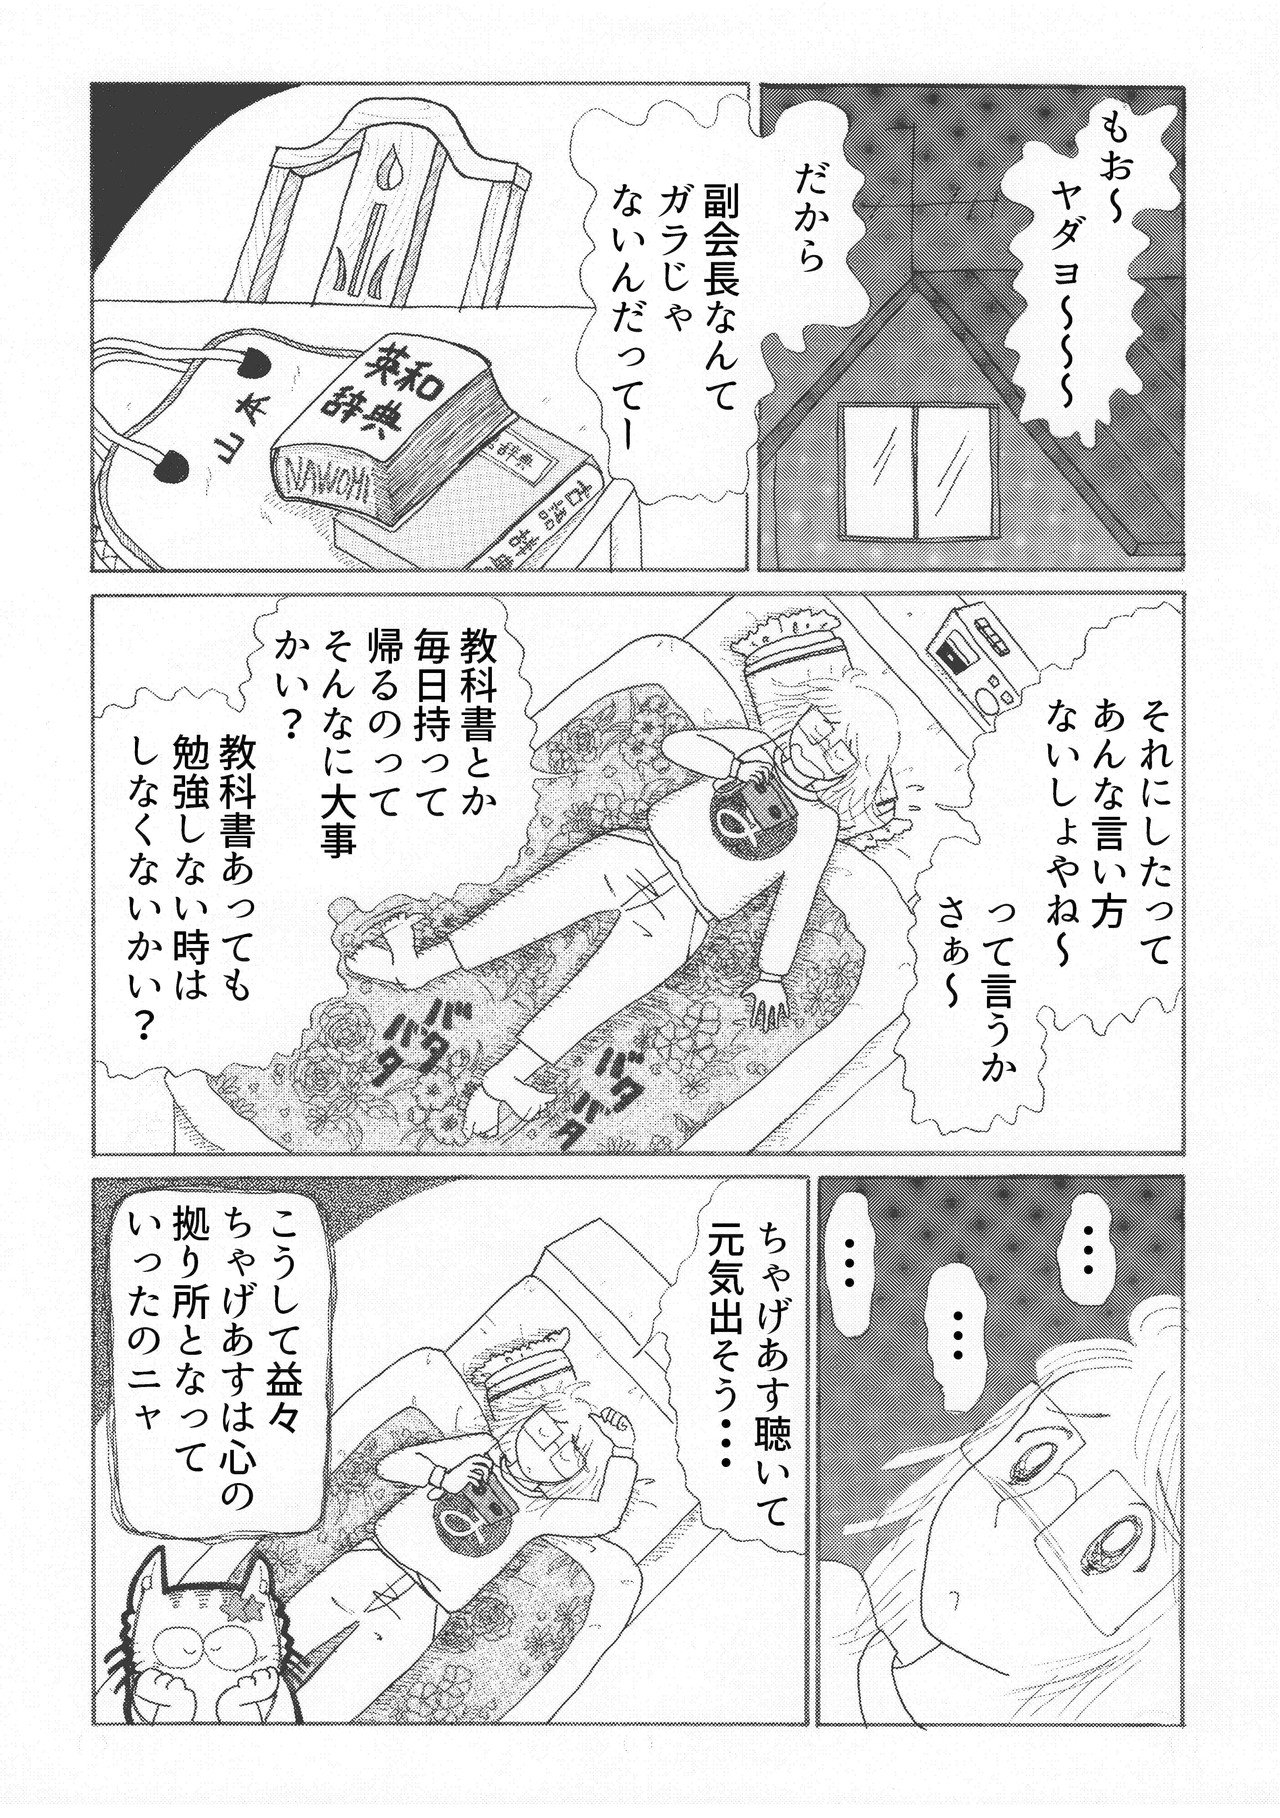 コミック3-13b-min